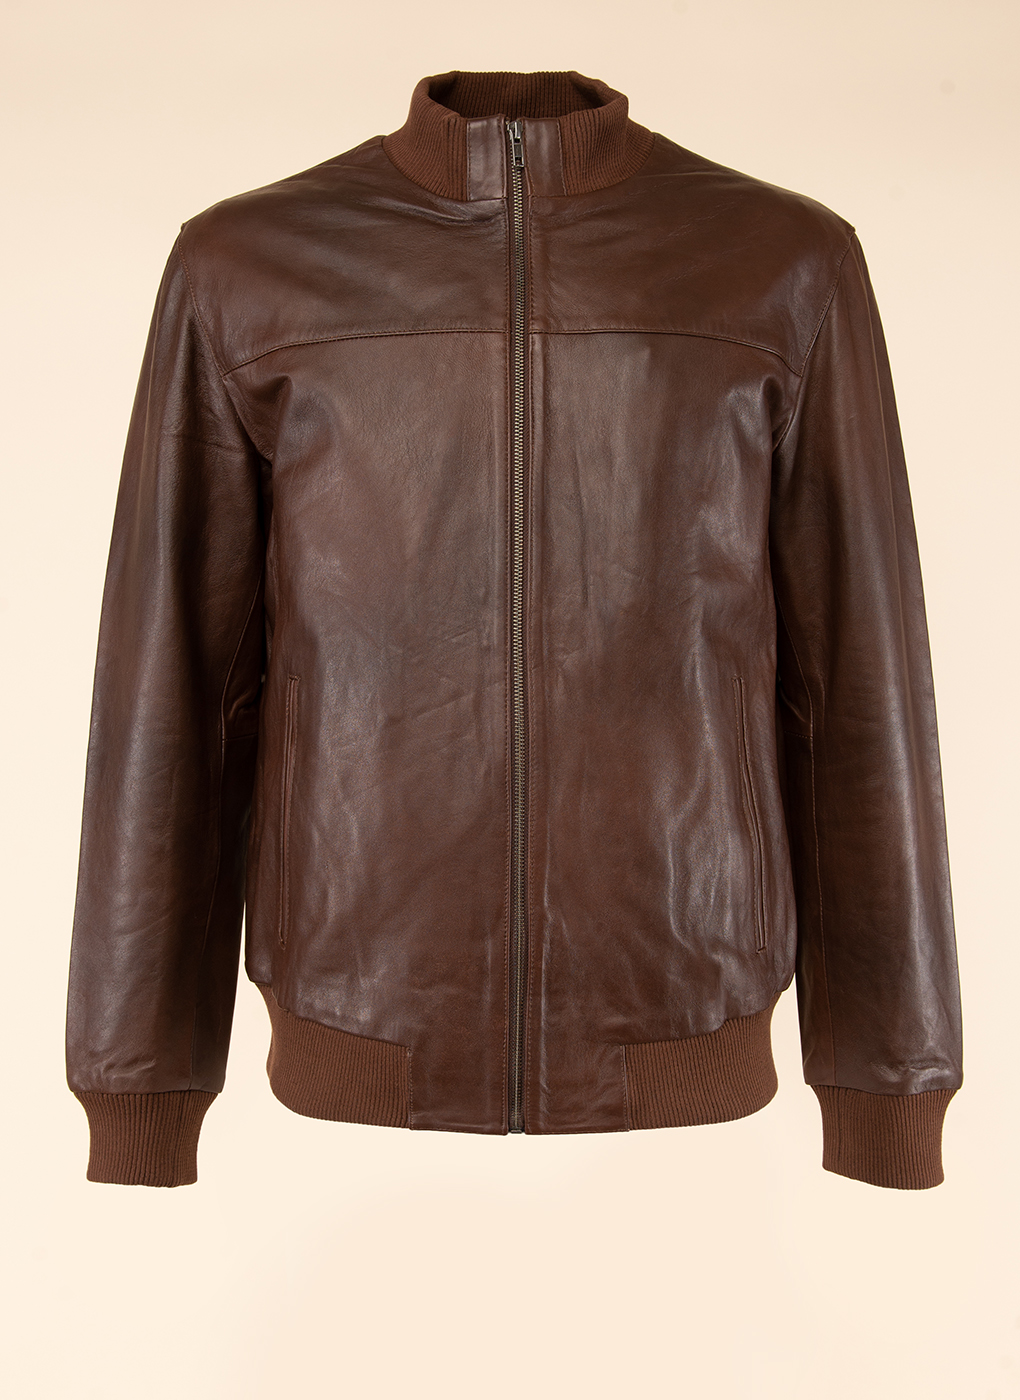 Кожаная куртка мужская Каляев 1614497 коричневая 60 RU